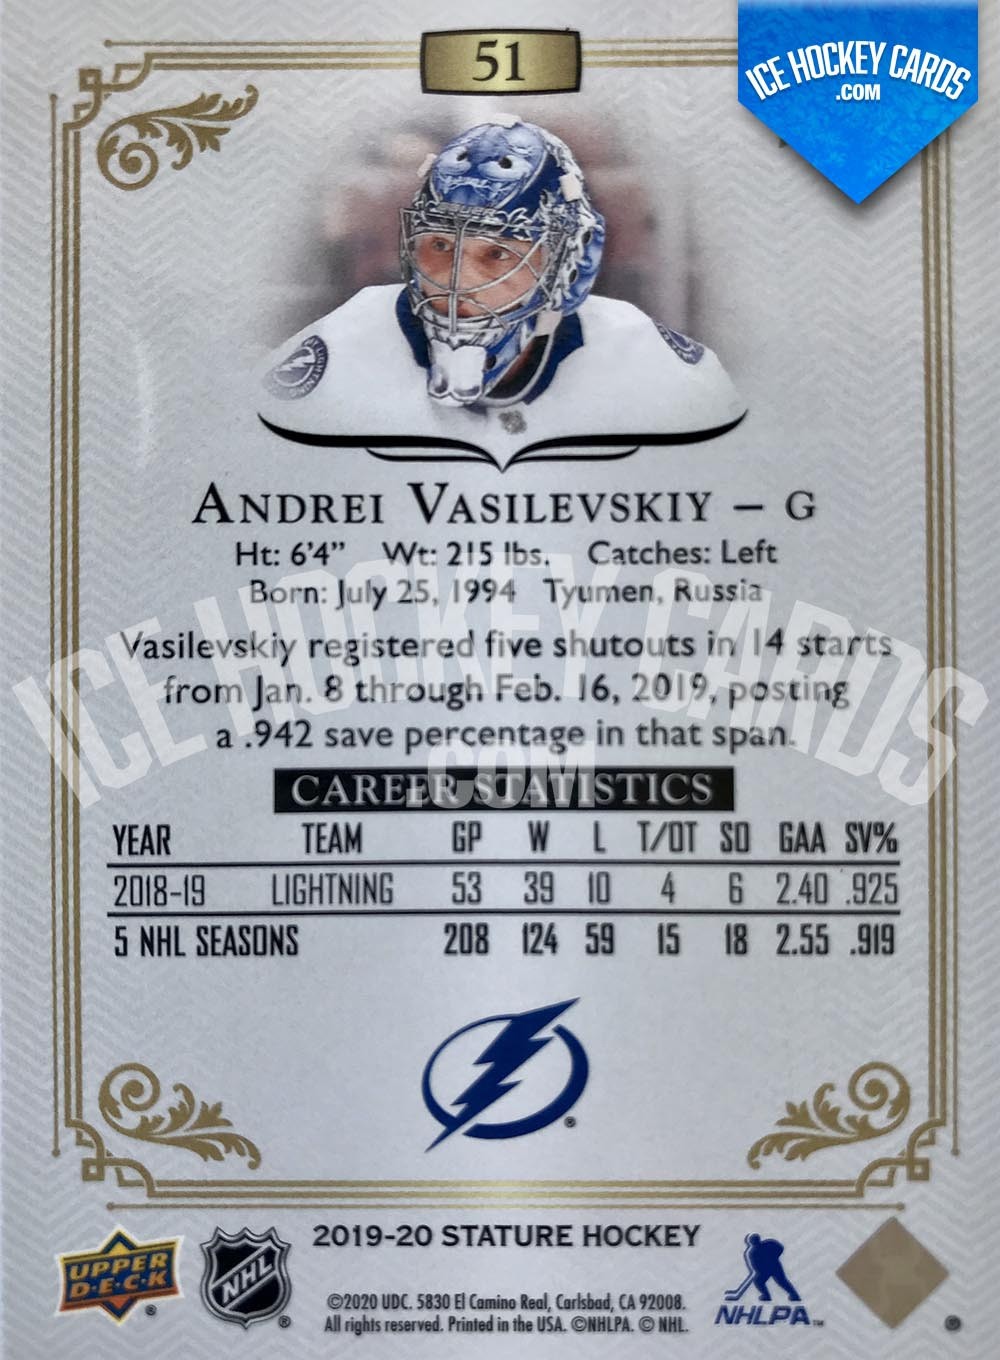 Upper Deck - Stature 2019-20 - Andrei Vasilevskiy Autographed Base Card back